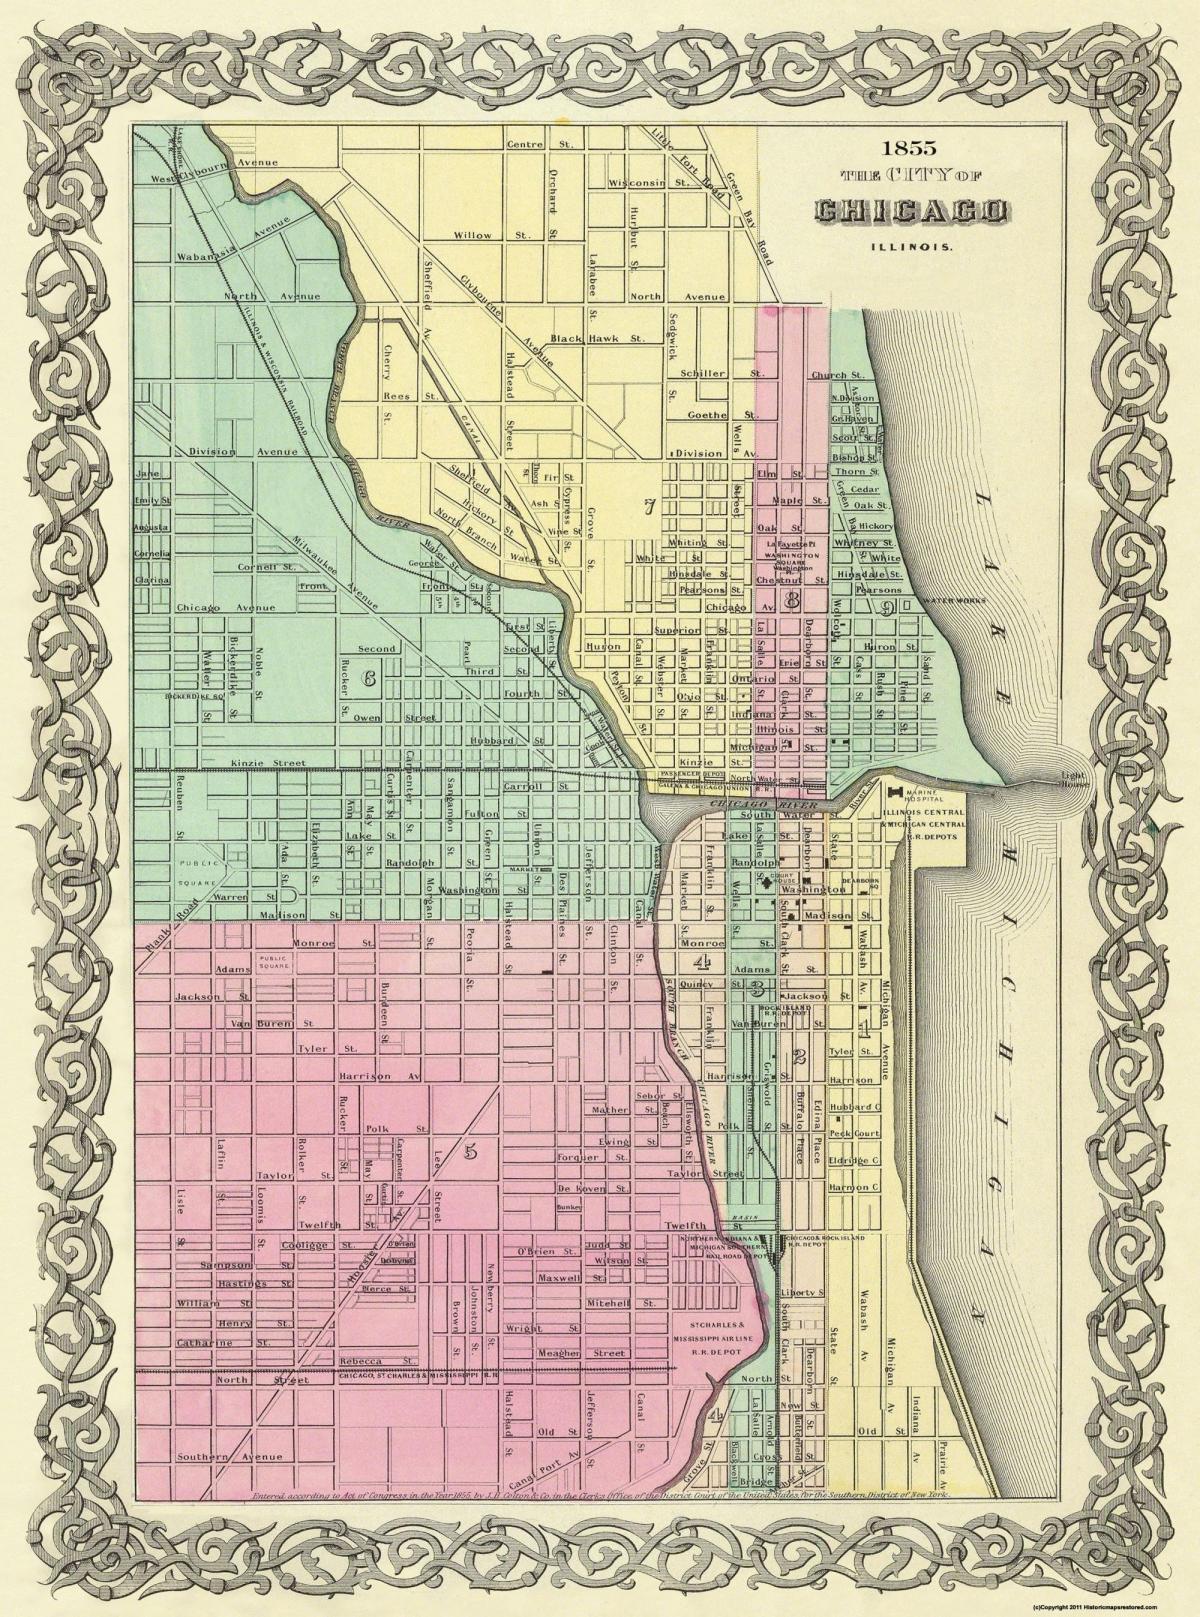 Chicago antique map